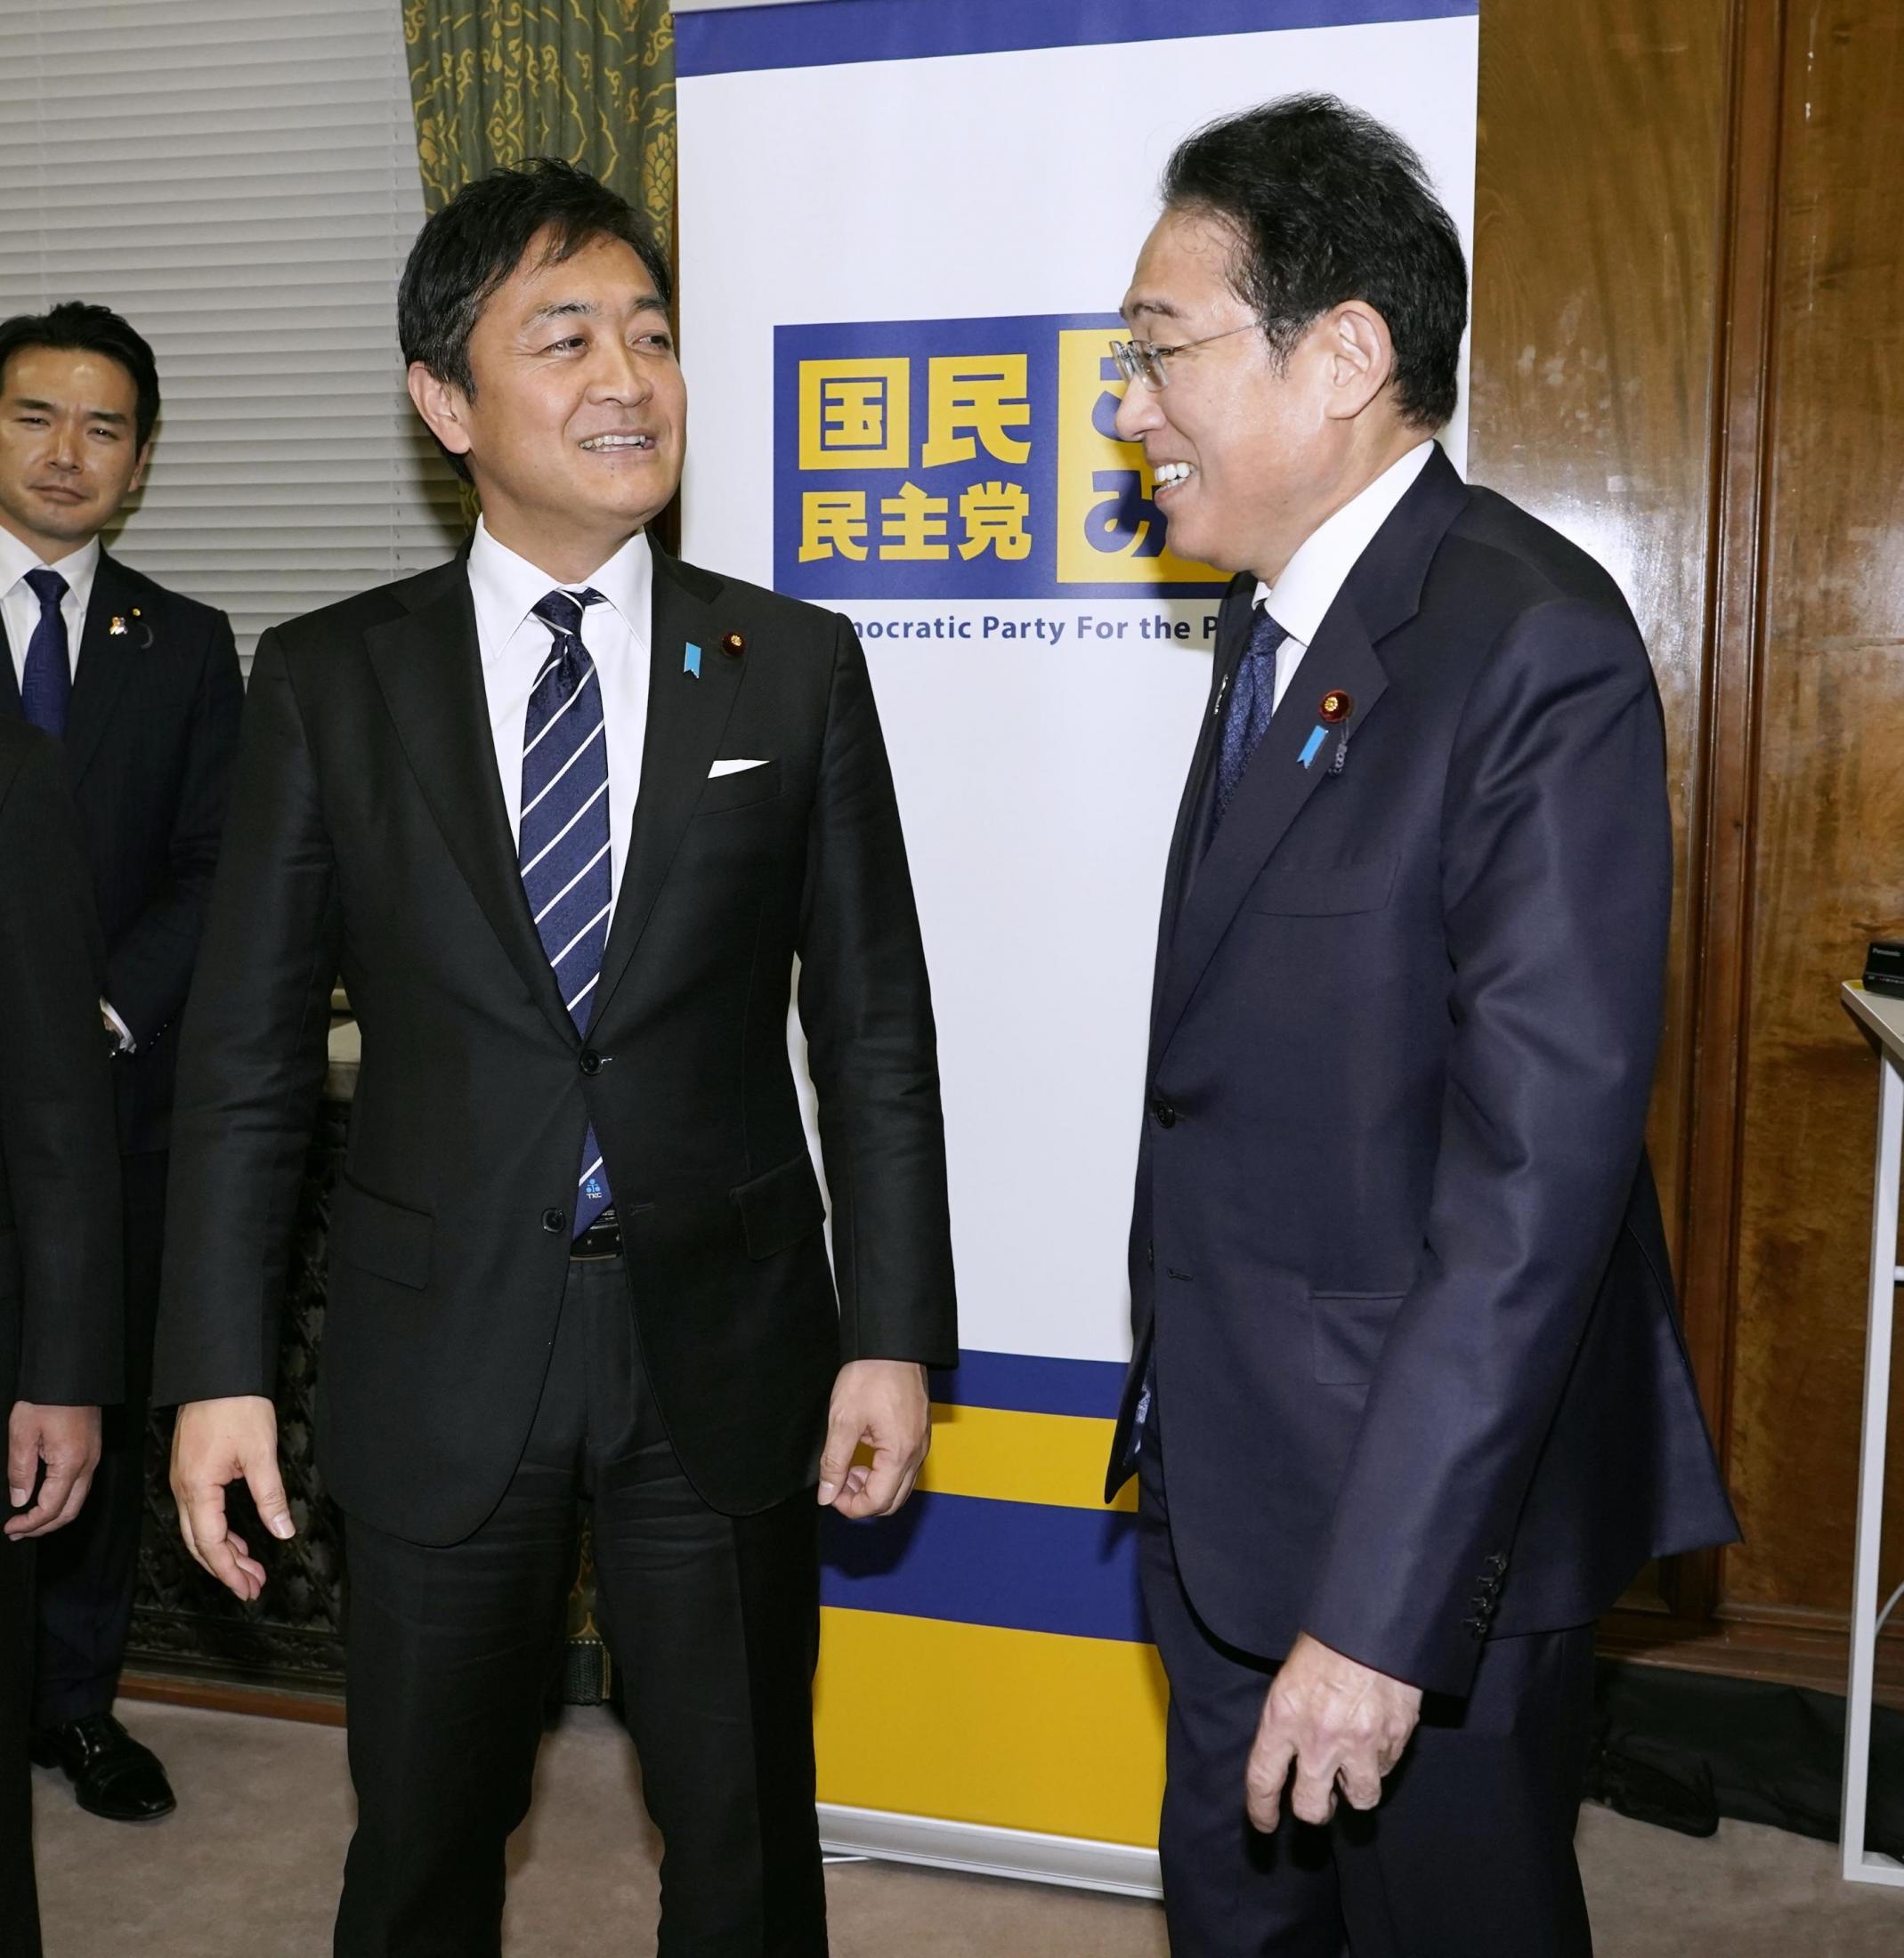 岸田首相、玉木代表に伝達「トリガー条項の議論・検討進める」